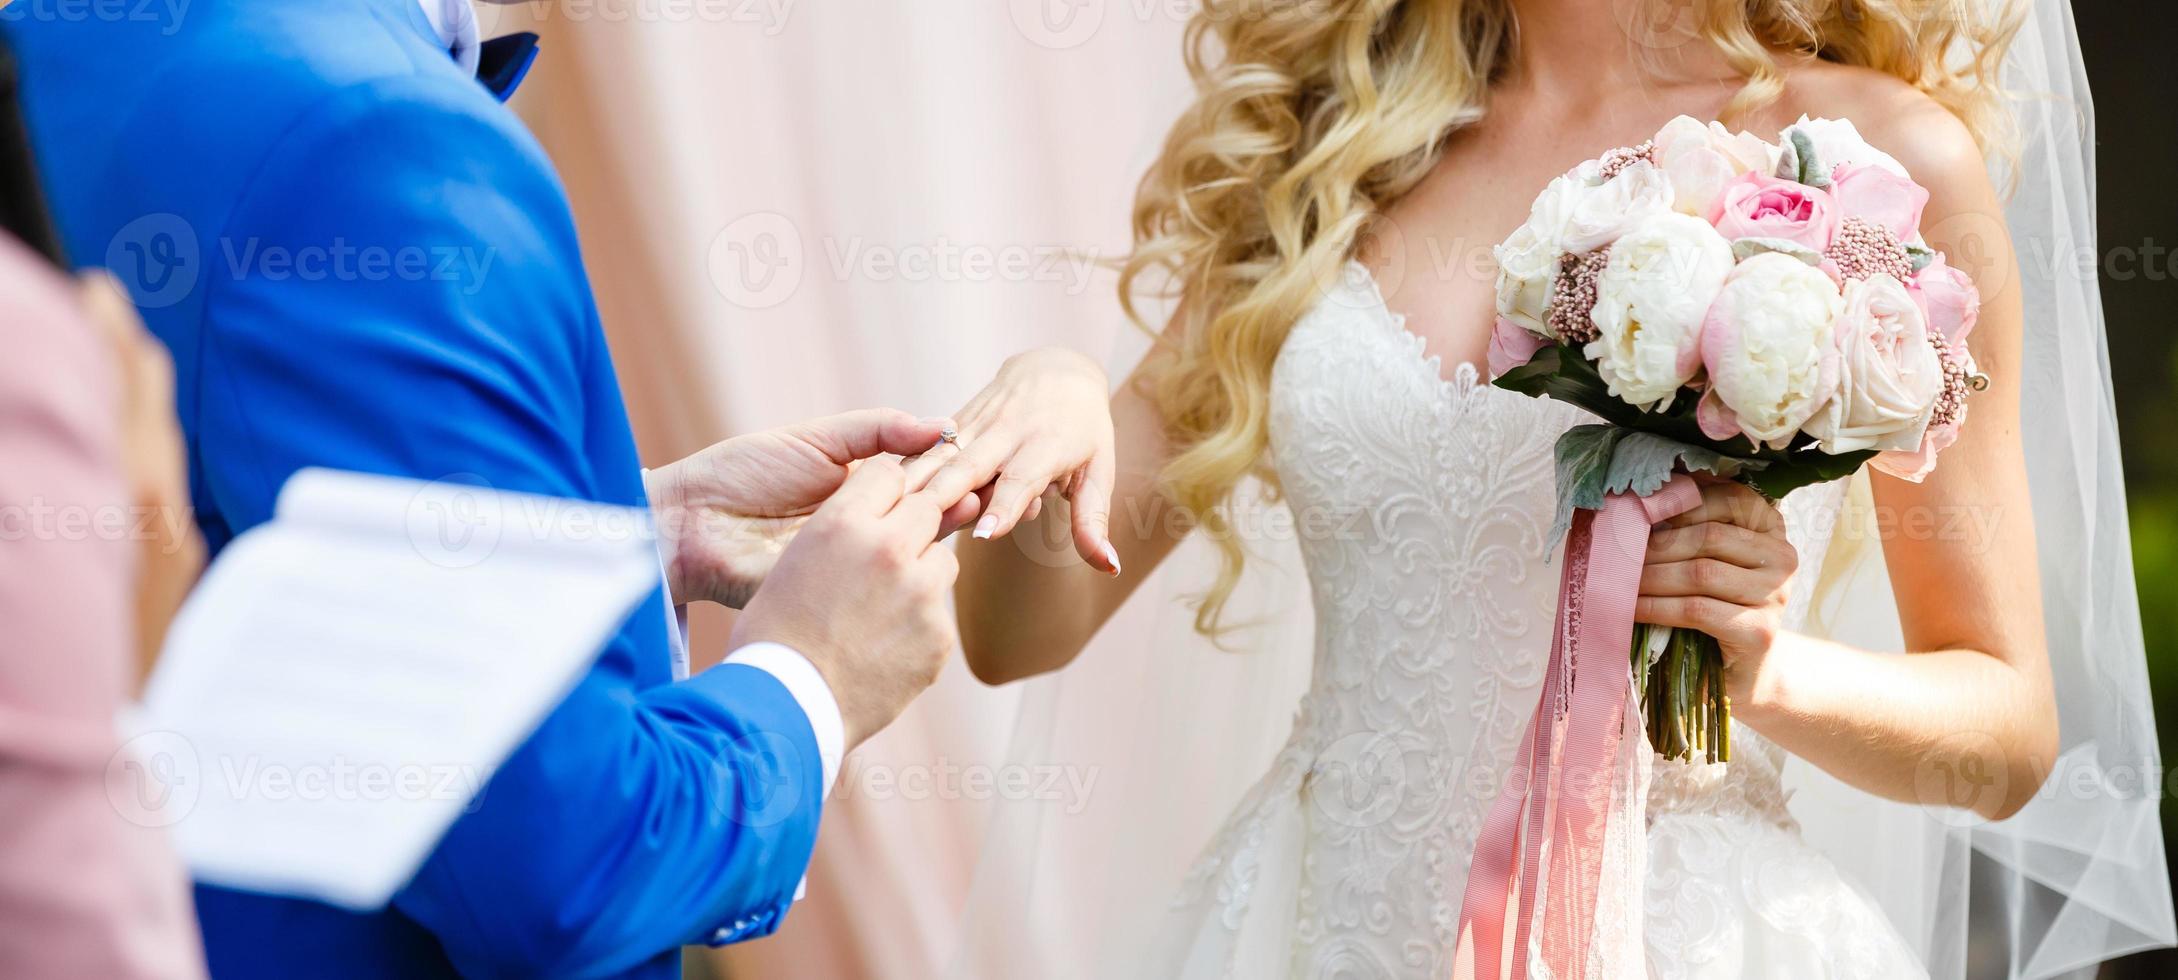 de bruid en bruidegom uitwisseling ringen gedurende een bruiloft ceremonie, een bruiloft in de zomer tuin foto